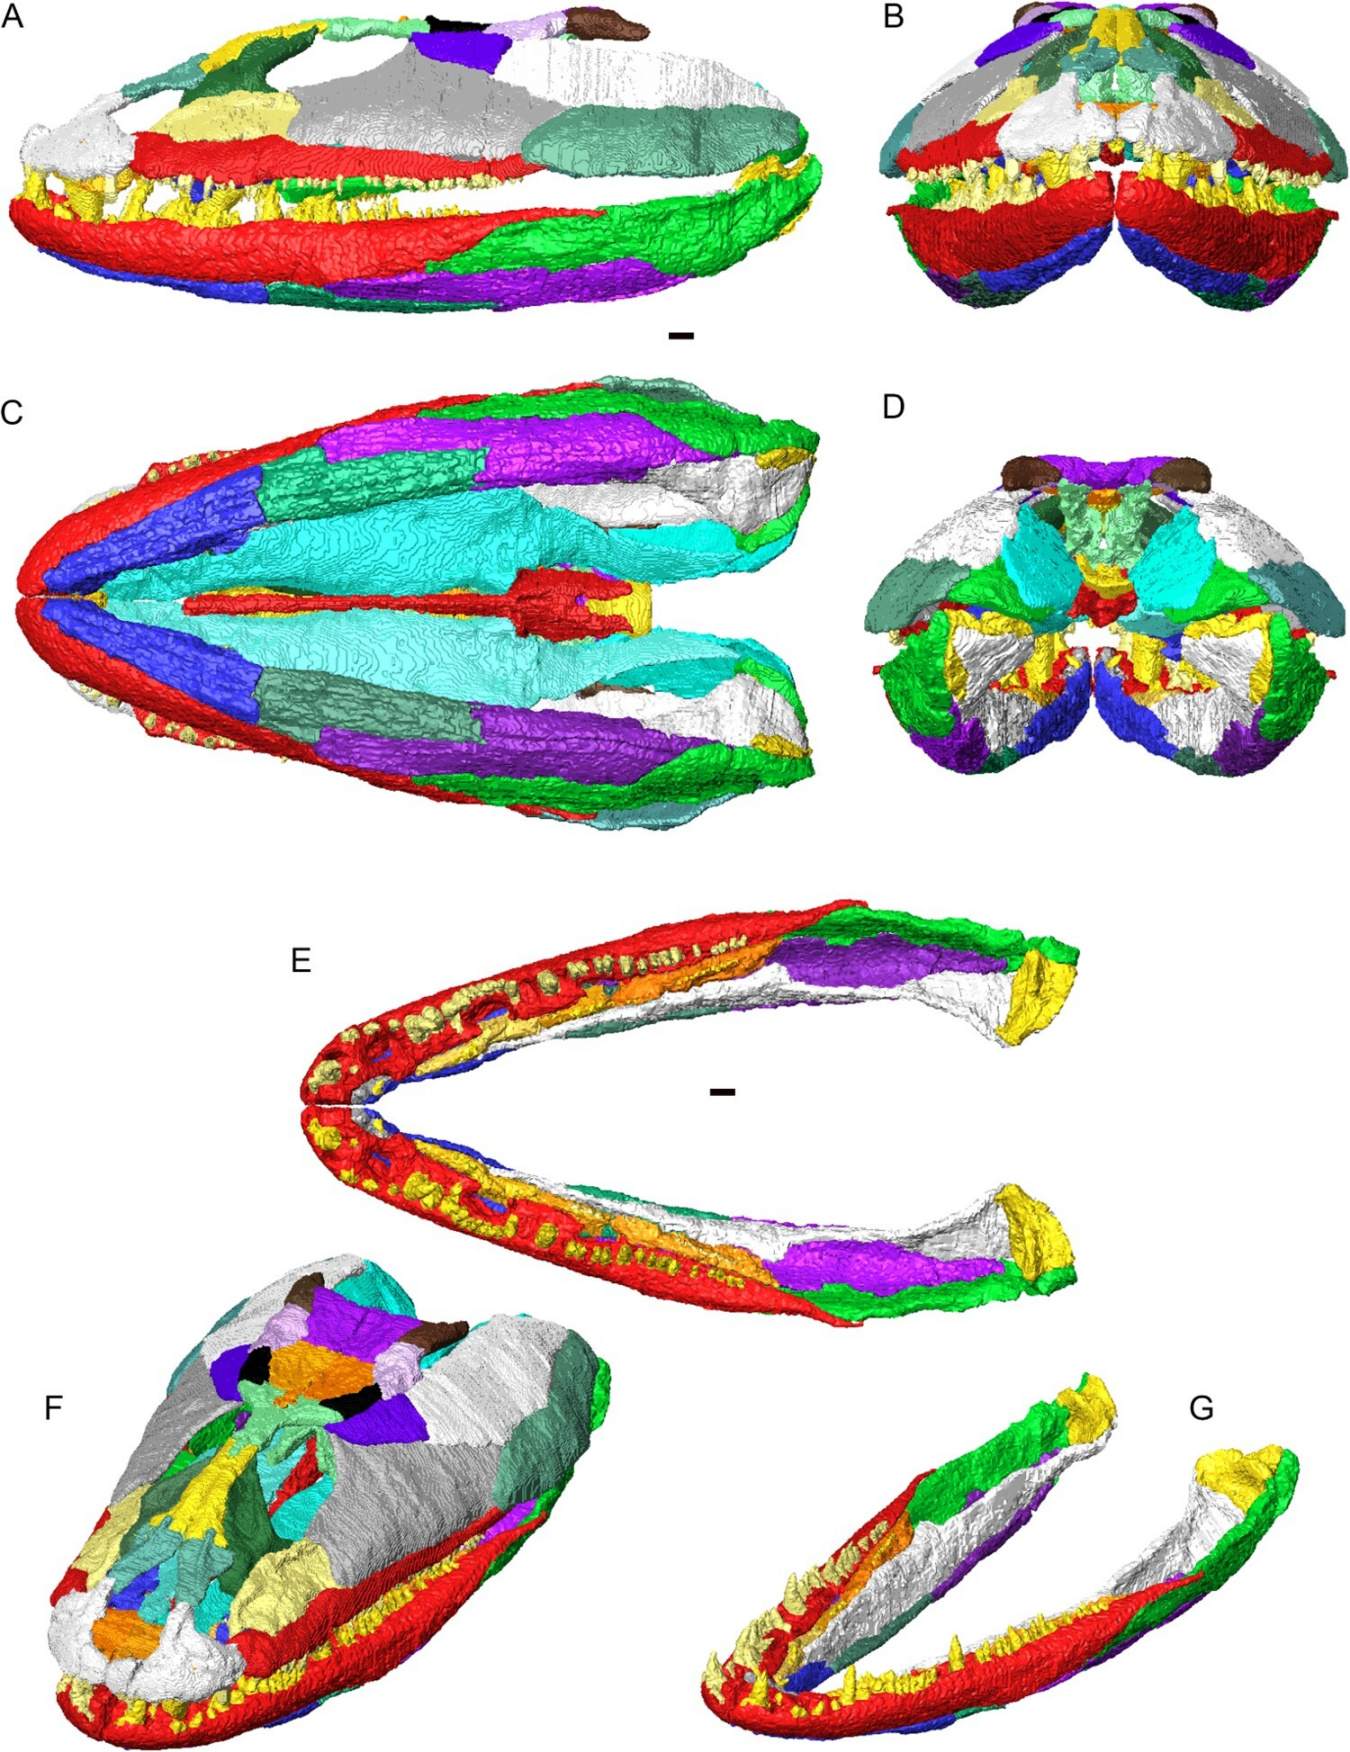 Crassigyrinus scoticus galvaskausa un apakšžokļu 3D rekonstrukcija artikulācijā. Atsevišķi kauli parādīti dažādās krāsās. A, skats no kreisās puses; B, priekšējais skats; C, ventrālais skats; D, aizmugures skats; E, šarnīrveida apakšžokļi (bez galvaskausa) muguras skatījumā; F, galvaskauss un apakšžoklis dorsolaterālā slīpajā skatā; G, šarnīrveida apakšžokļi dorsolaterālā slīpā skatā.